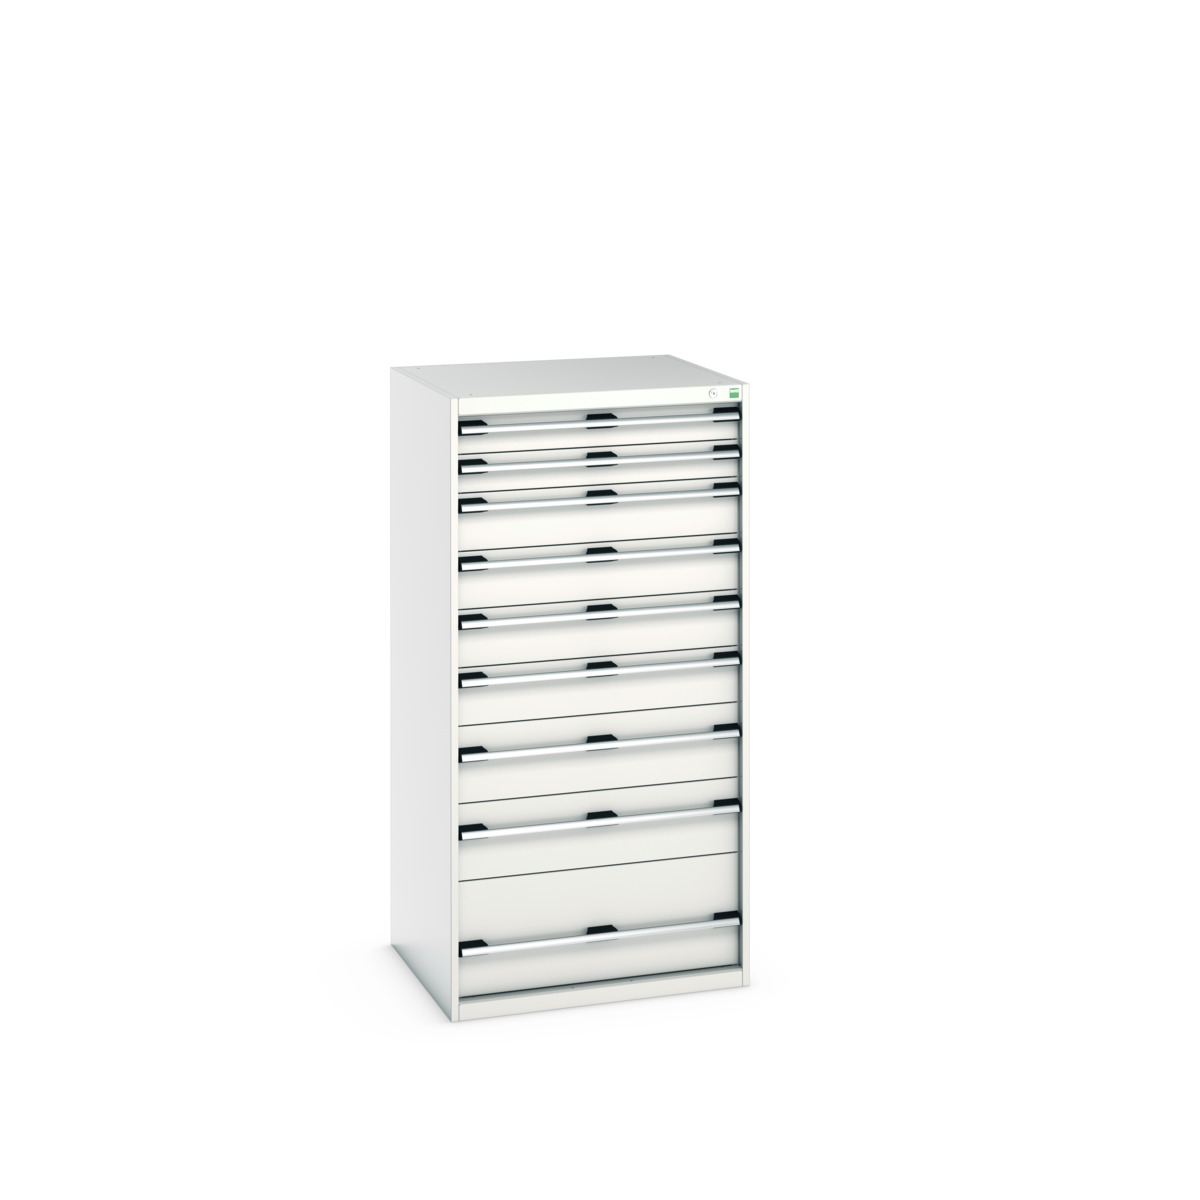 40028040.16V - cubio drawer cabinet